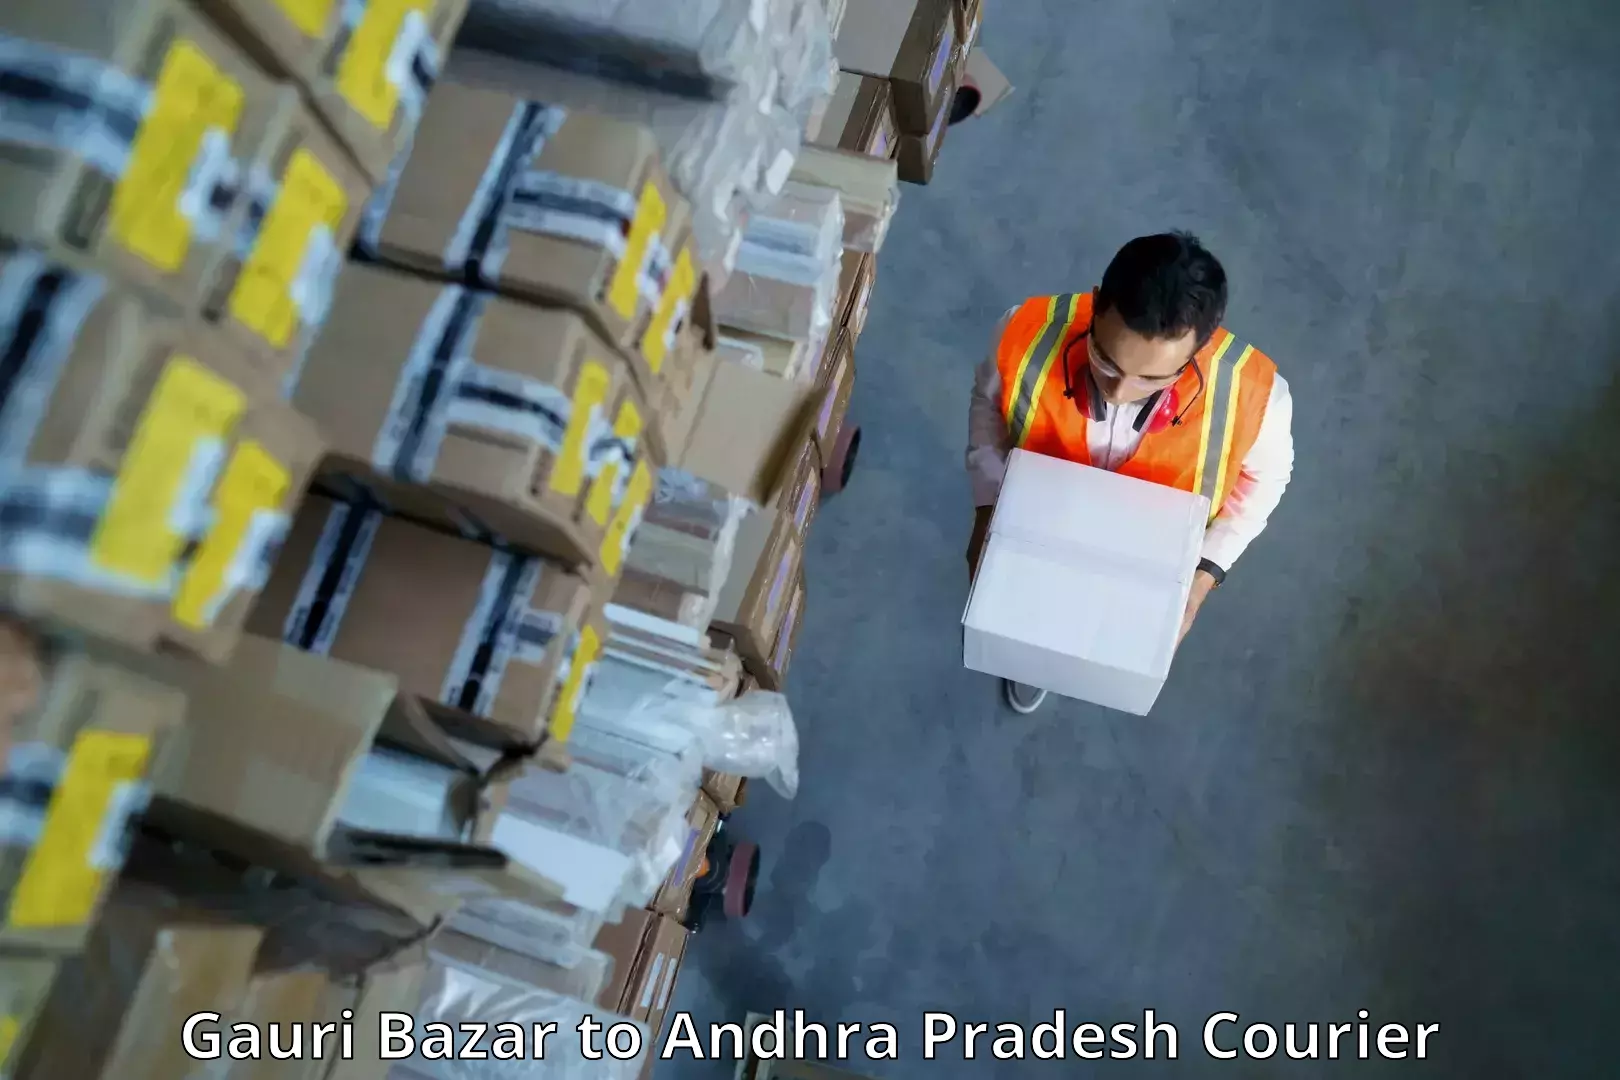 Urban courier service Gauri Bazar to Pamarru